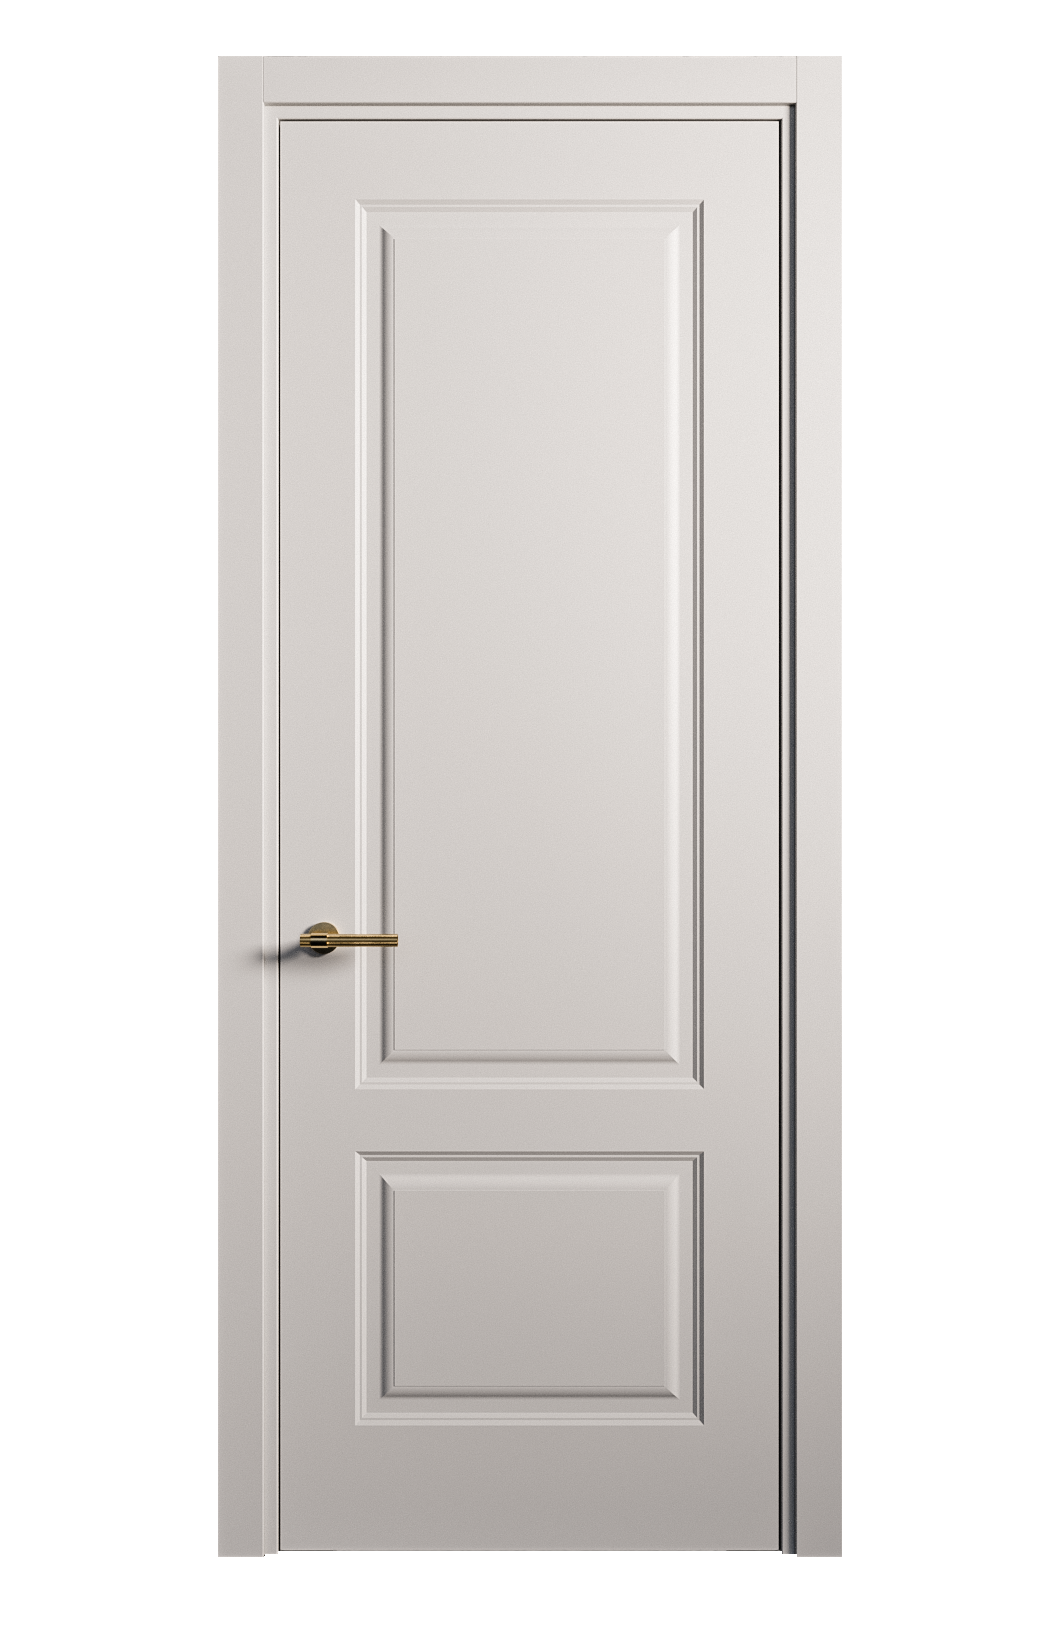 Межкомнатная дверь Вита-1 глухая эмаль ral 7047 26250